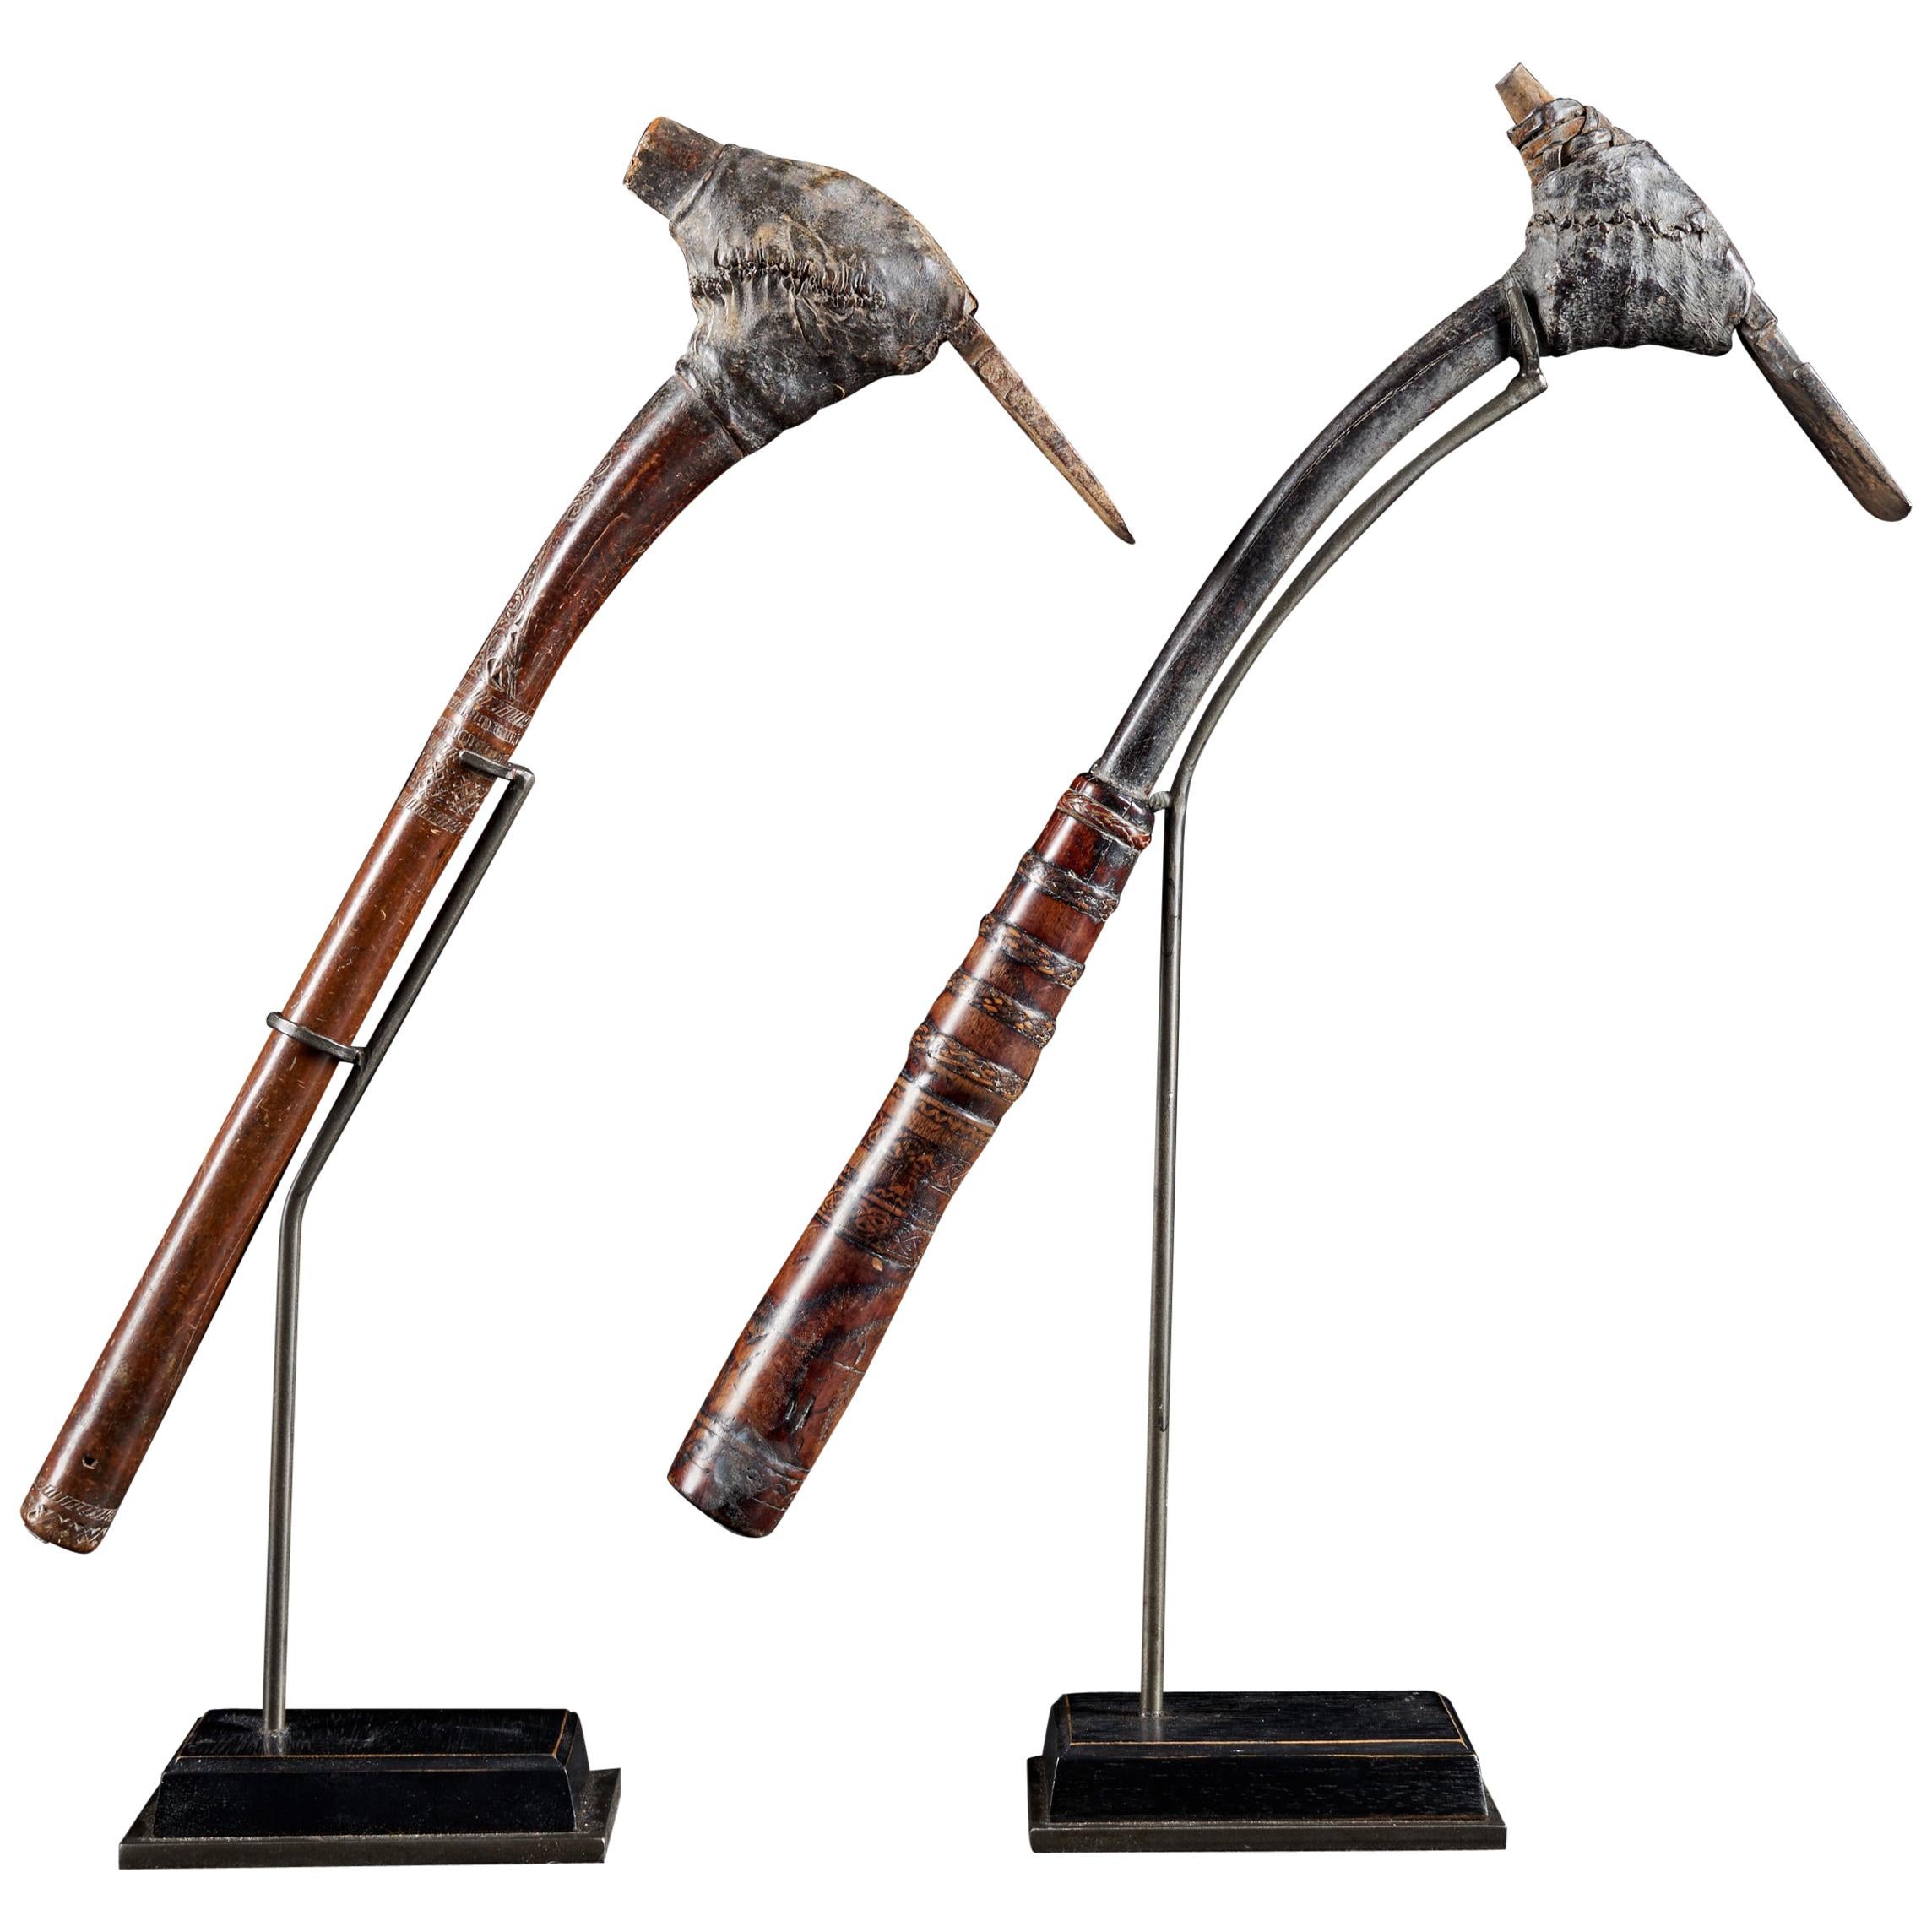 Paire d'outils Adze de style Ethno, décorés de cérémonies tribales des premiers autochtones